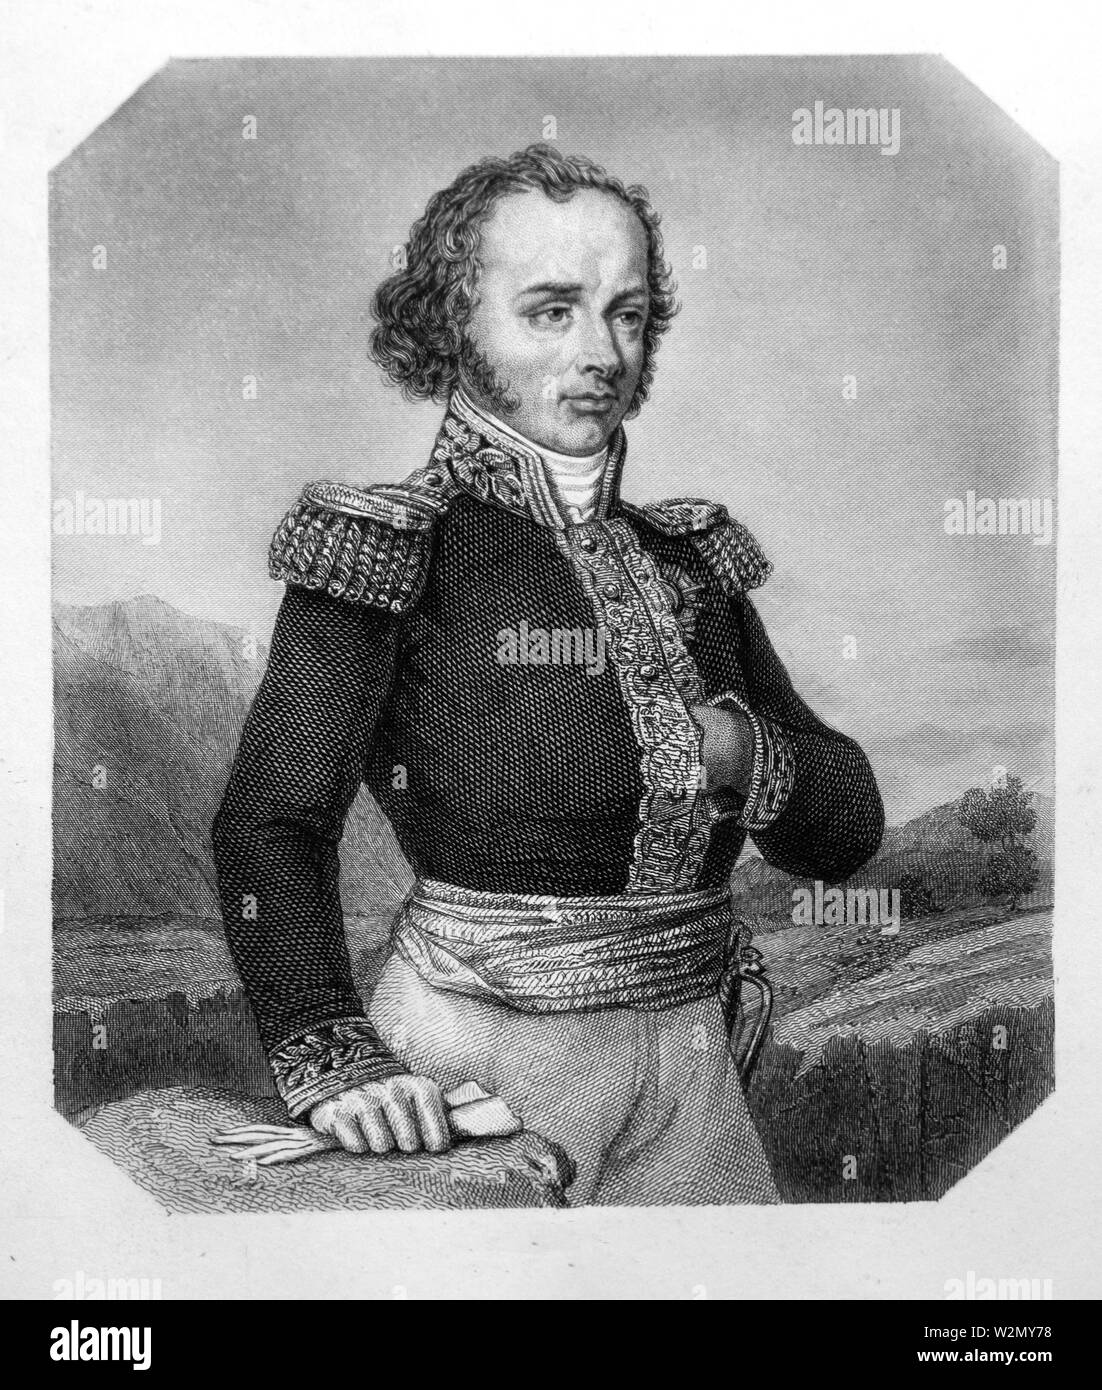 Maximilien Sébastien Foy. Maximilien Sébastien Foy (3. Februar 1775-28 November 1825) war ein französischer Feldherr, Staatsmann und Schriftsteller. Stockfoto